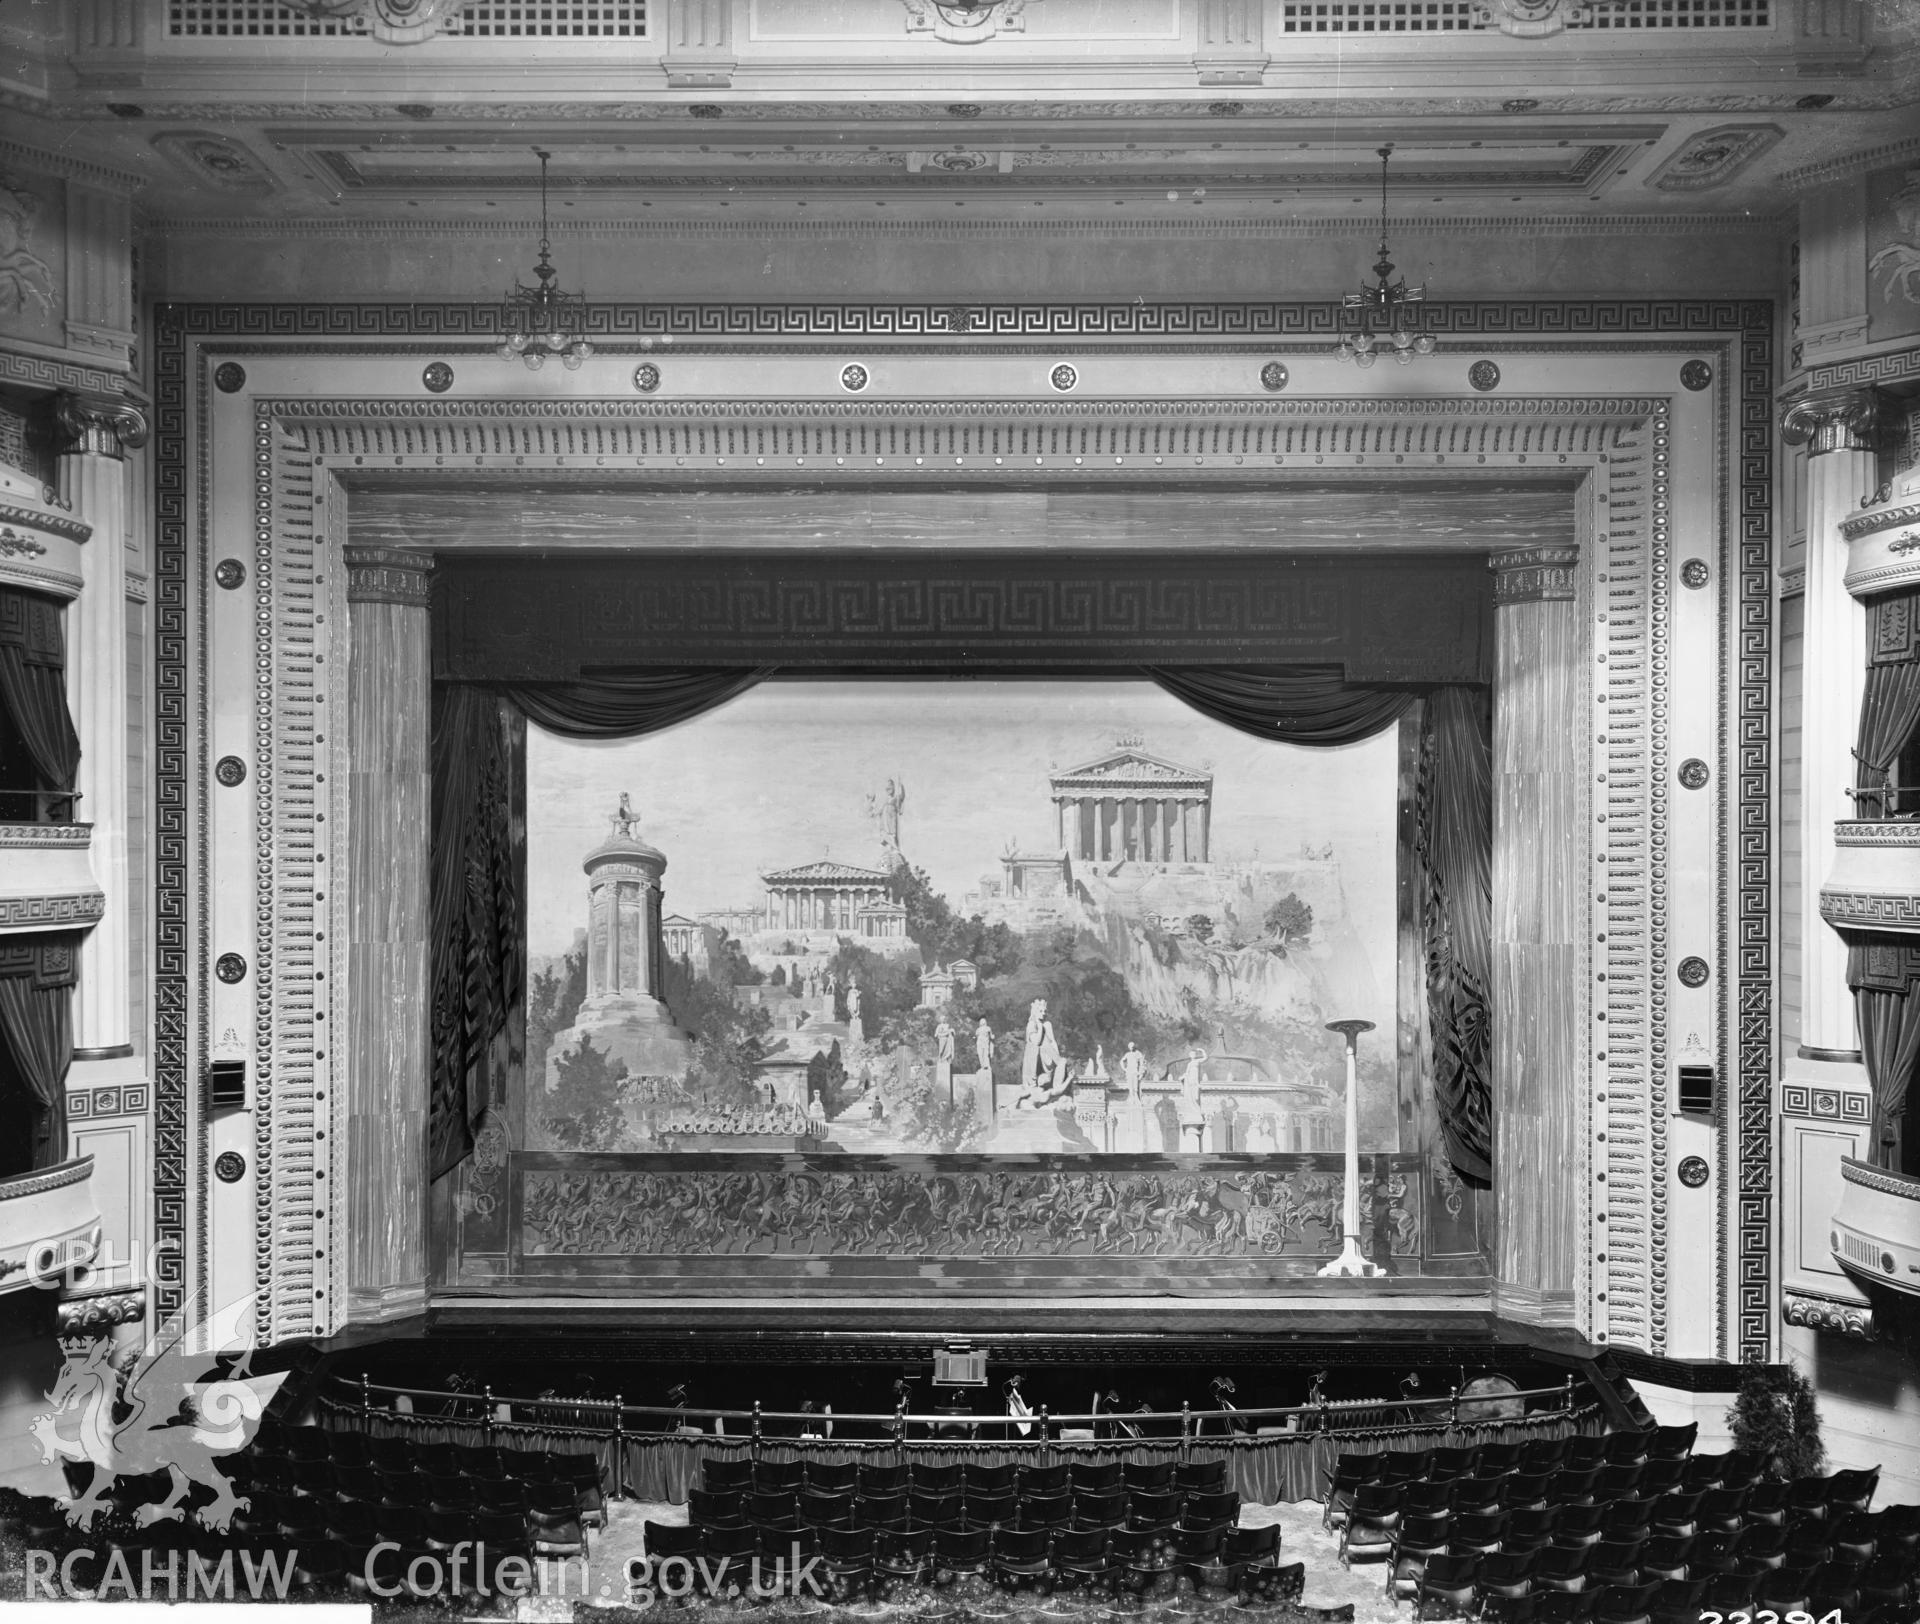 Interior view of the Empire Theatre